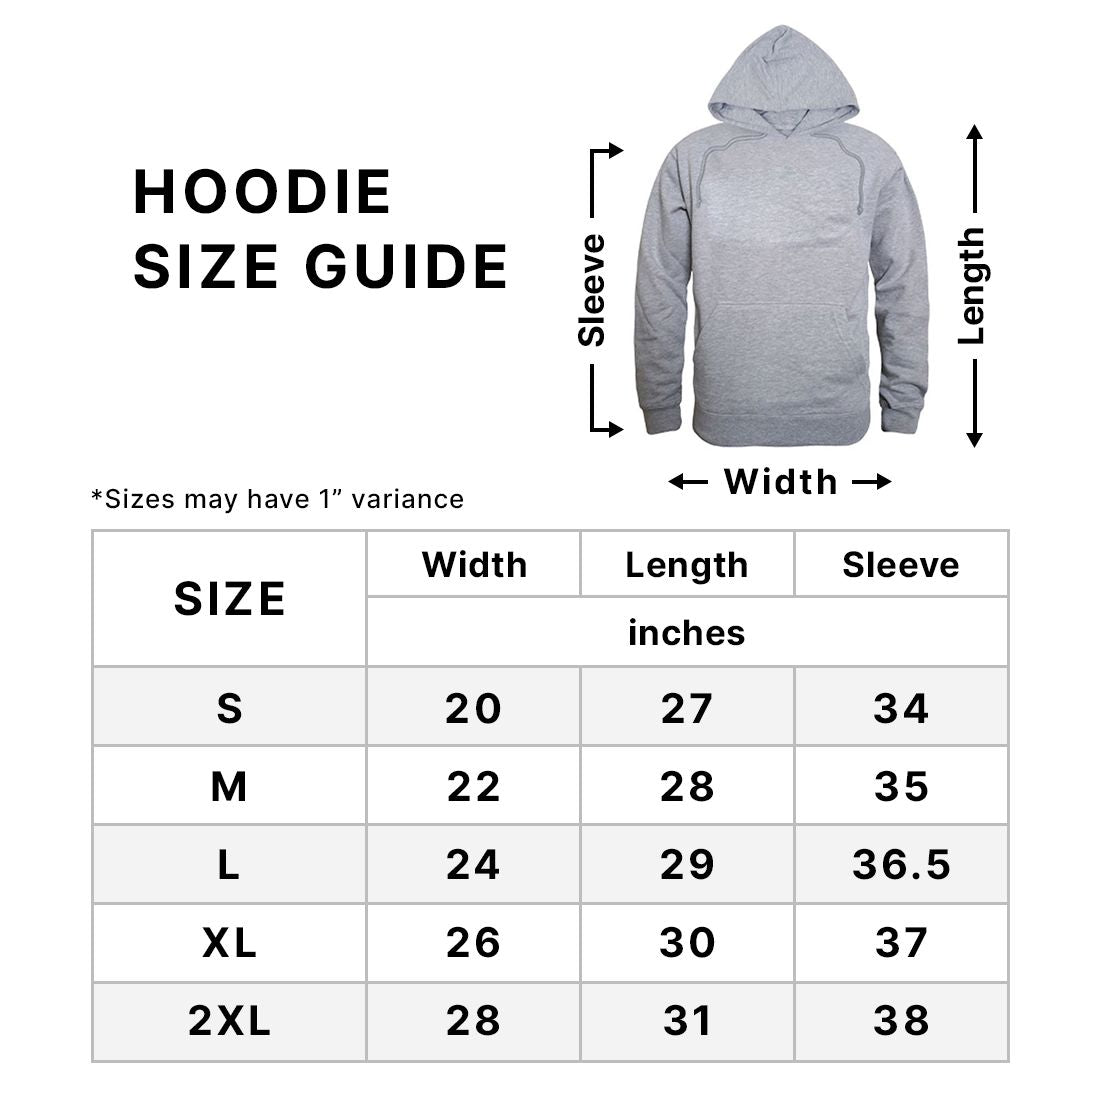 Fleece size guide